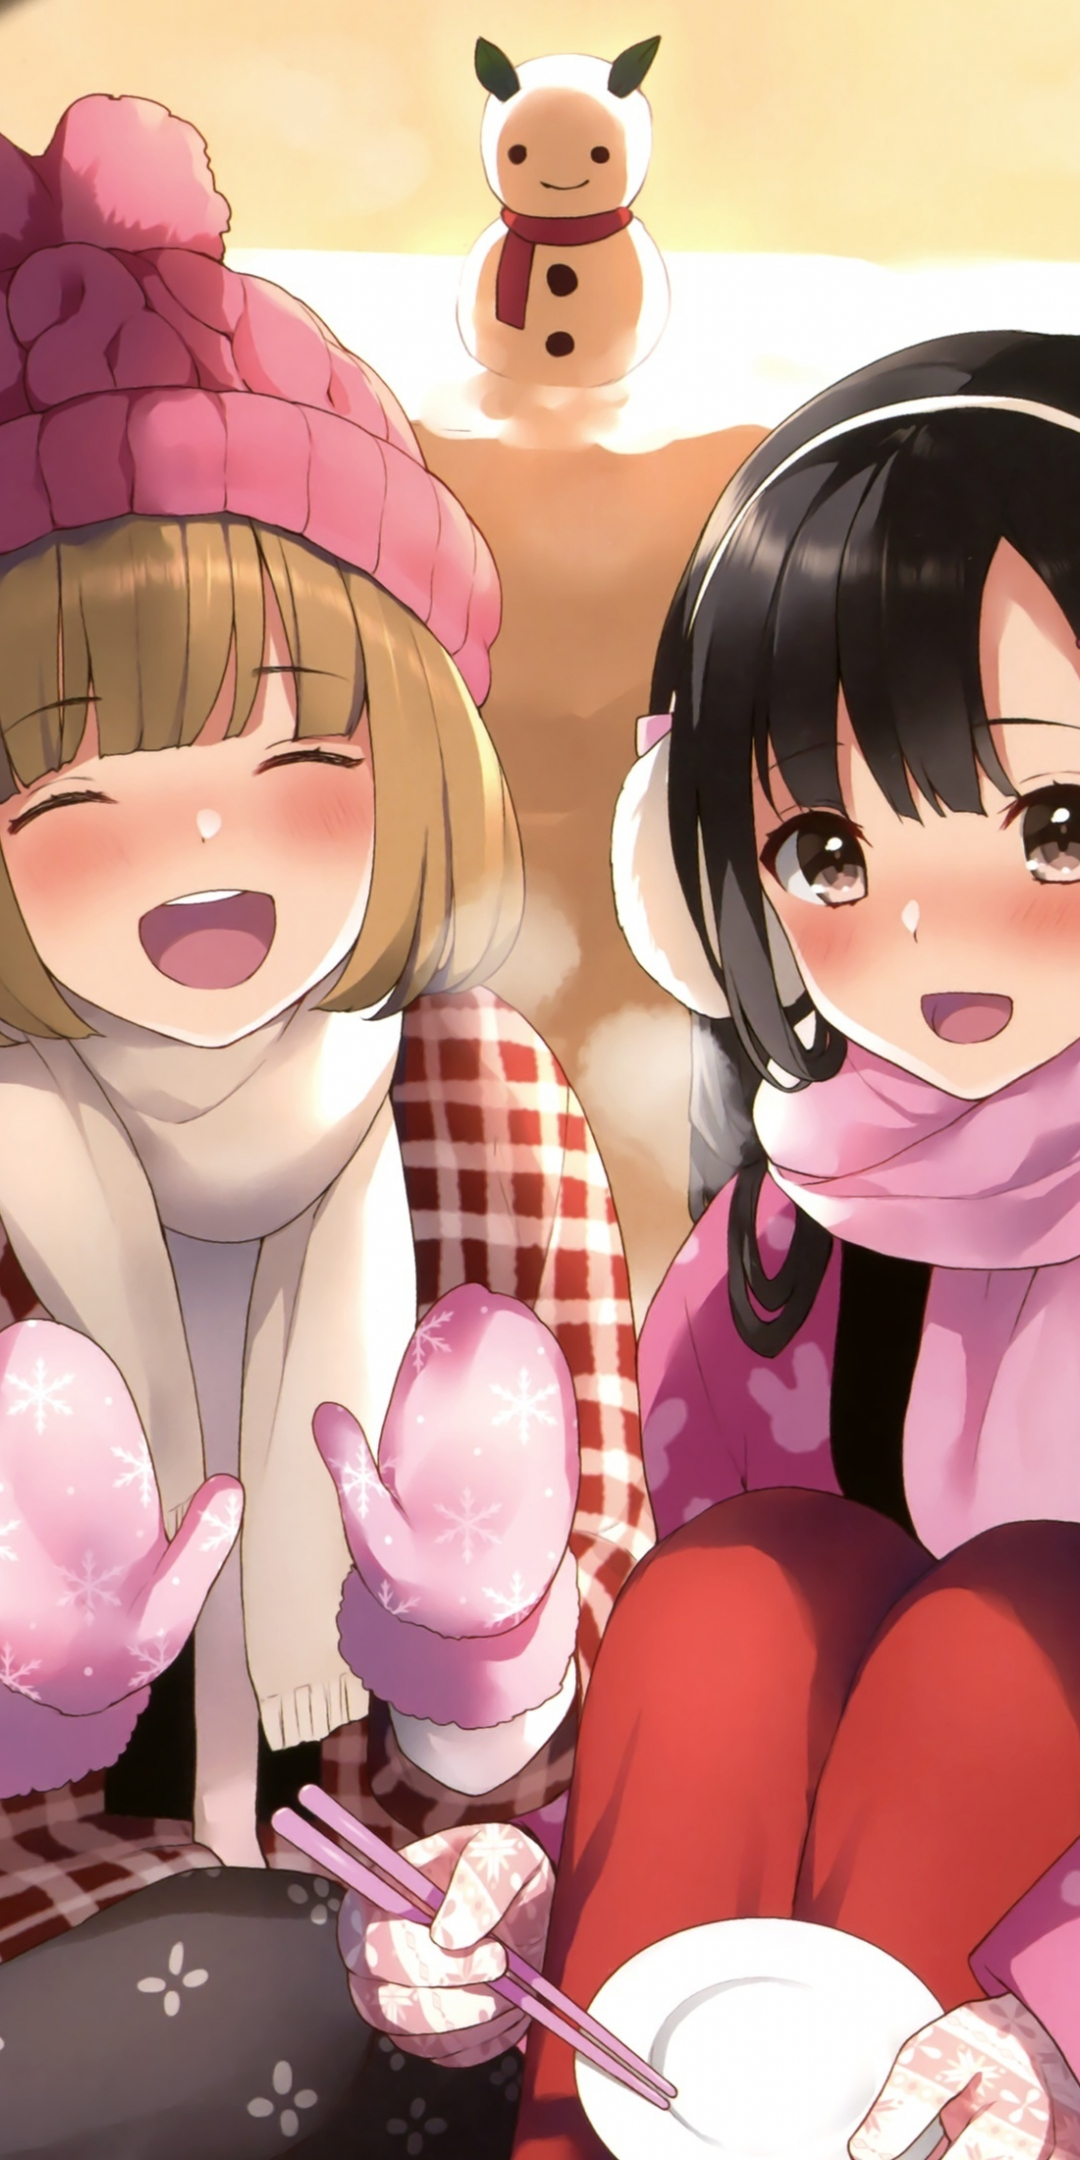 Winter, cute anime girls, friends, 1080x2160 wallpaper